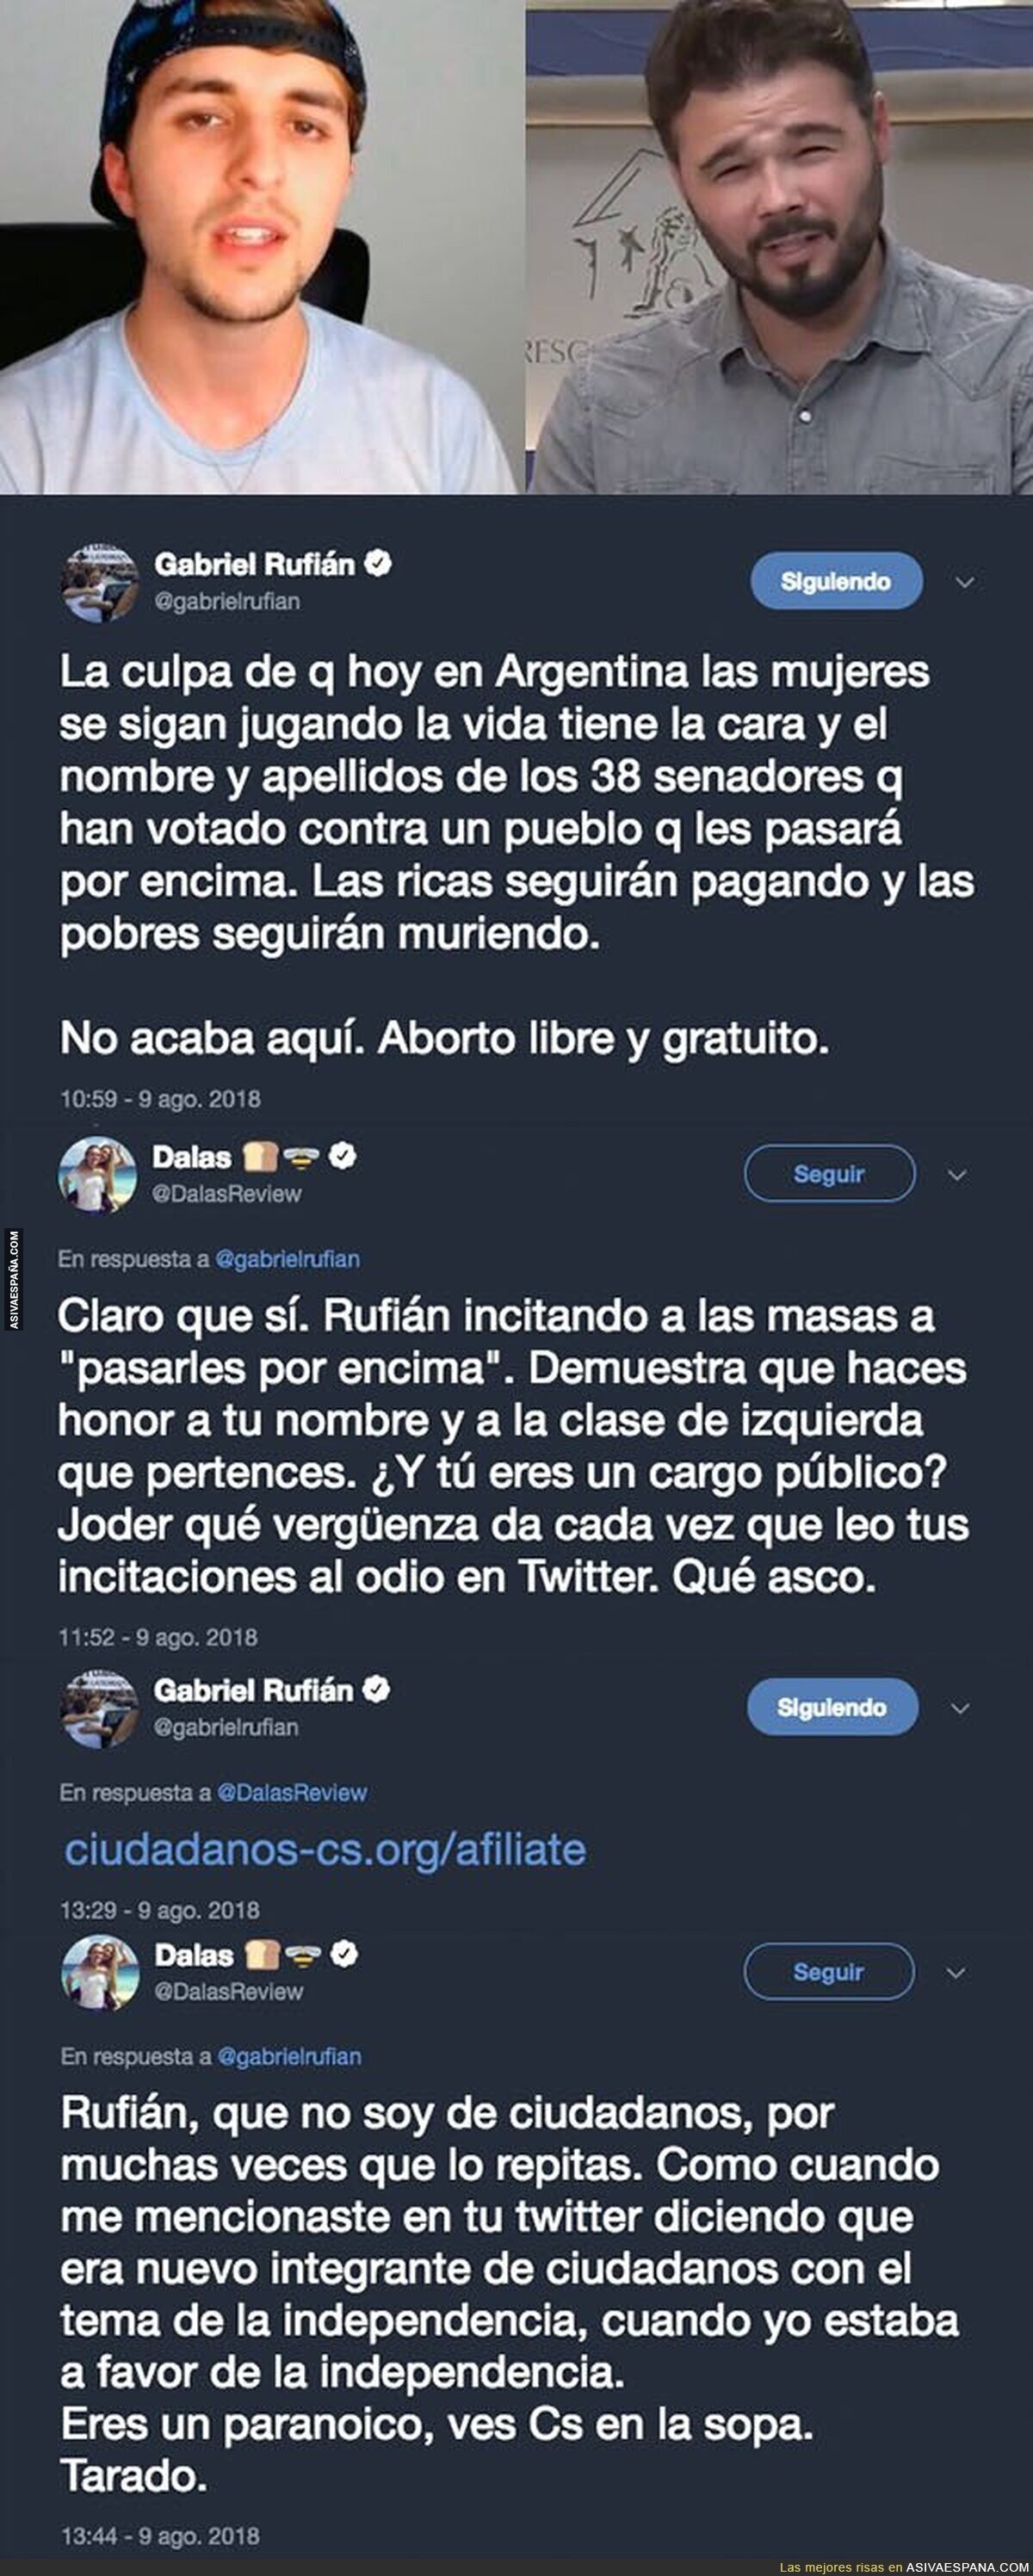 La madre de todas las peleas llega a Twitter con el enfrentamiento entre DalasReview y Gabriel Rufián